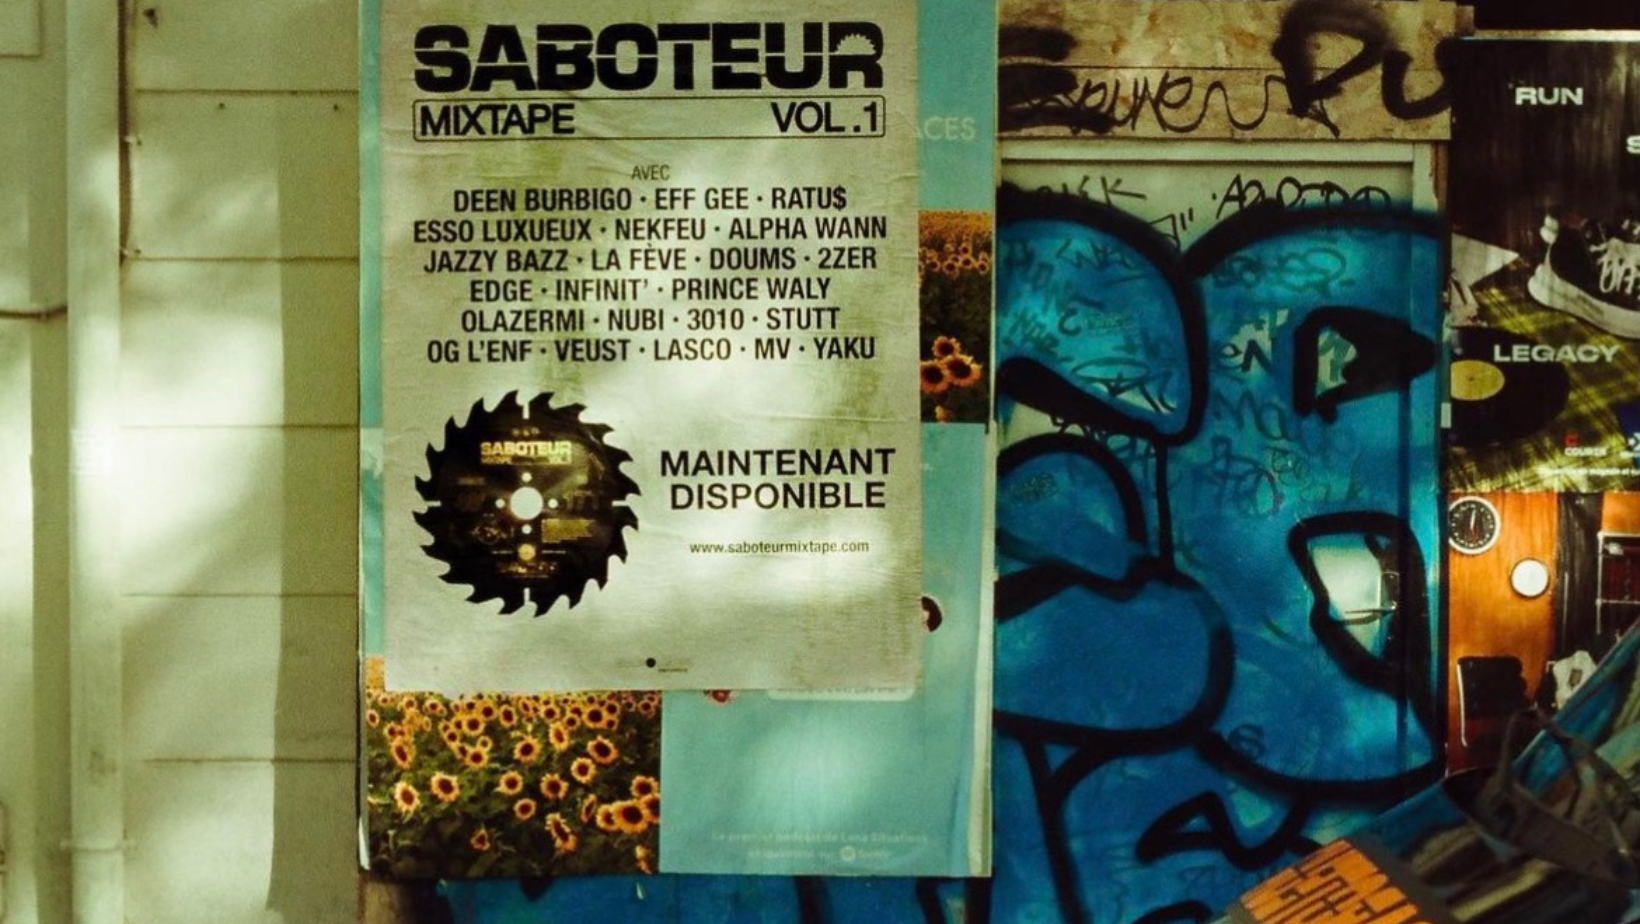 Saboteur Records, retour sur leur première mixtape